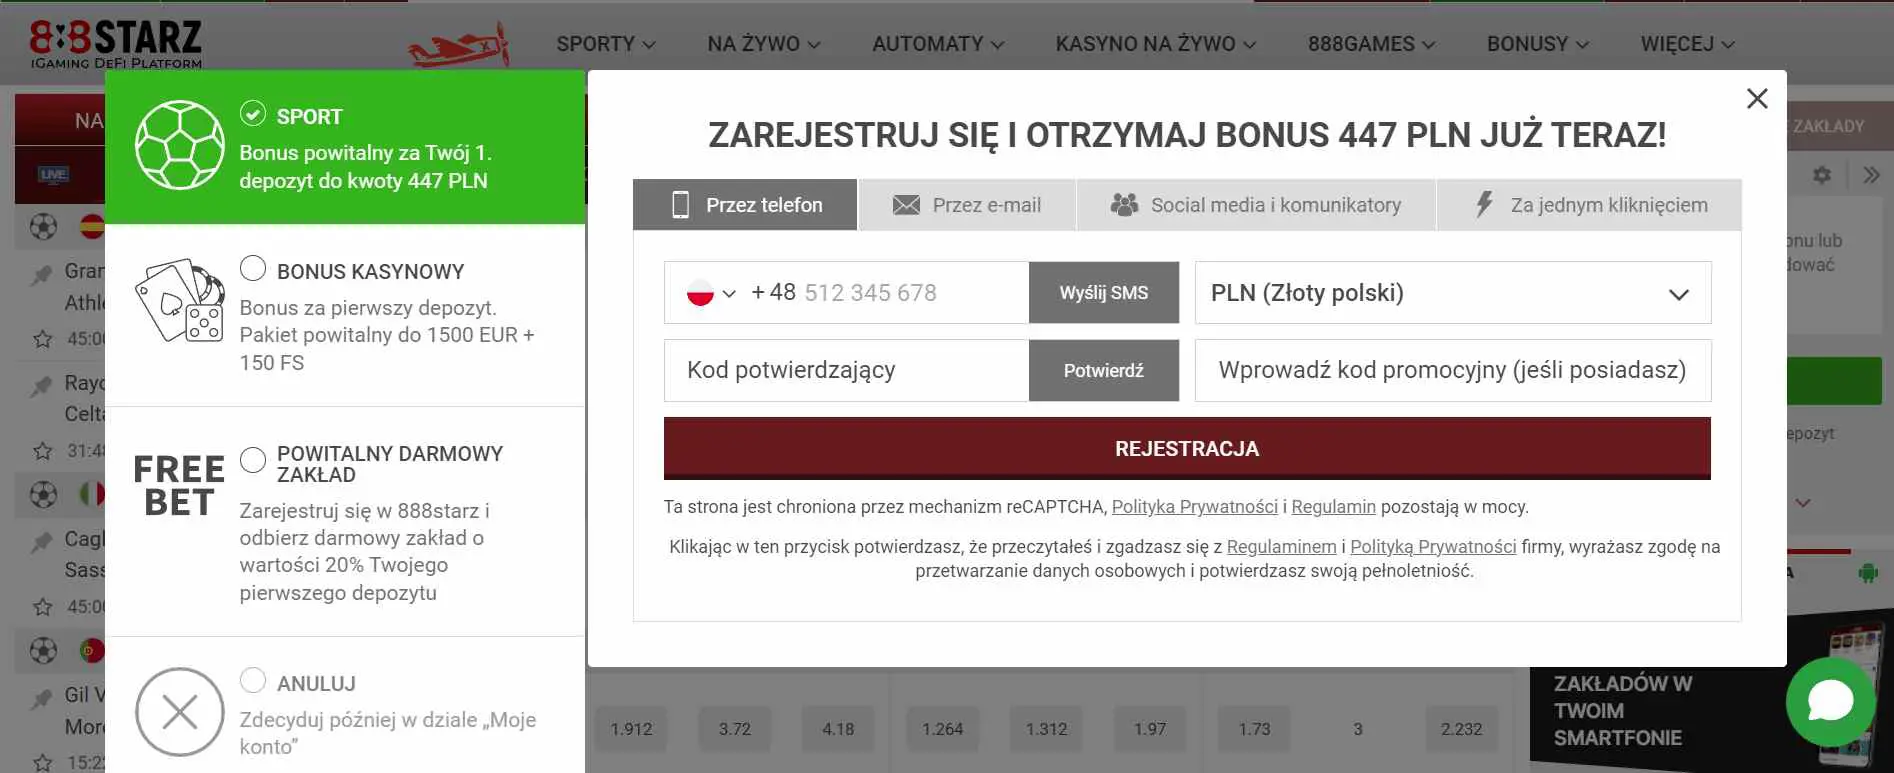 Czy kasyno jest legalne w Polsce? Wszystko, co musisz wiedzieć